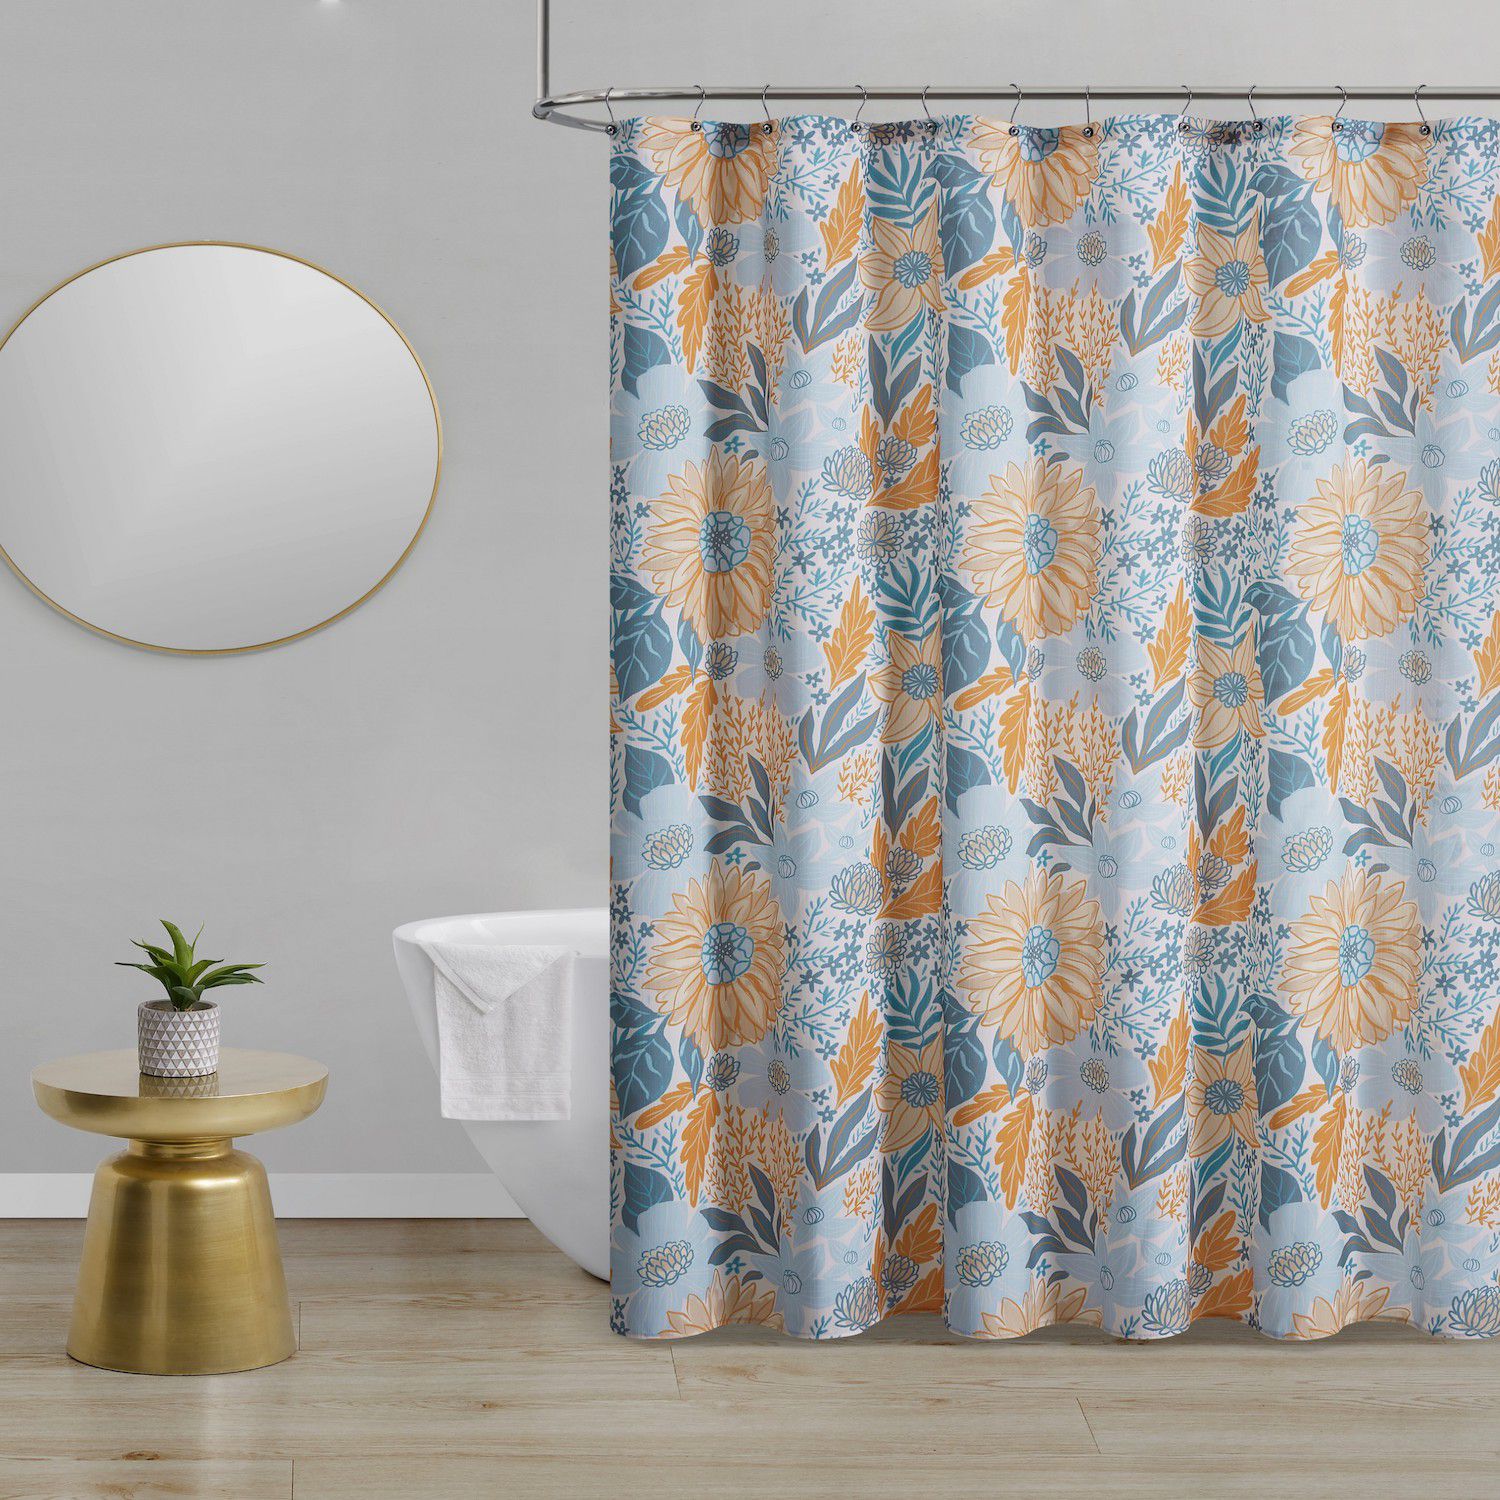 Waterproof Shower Curtains Kohls